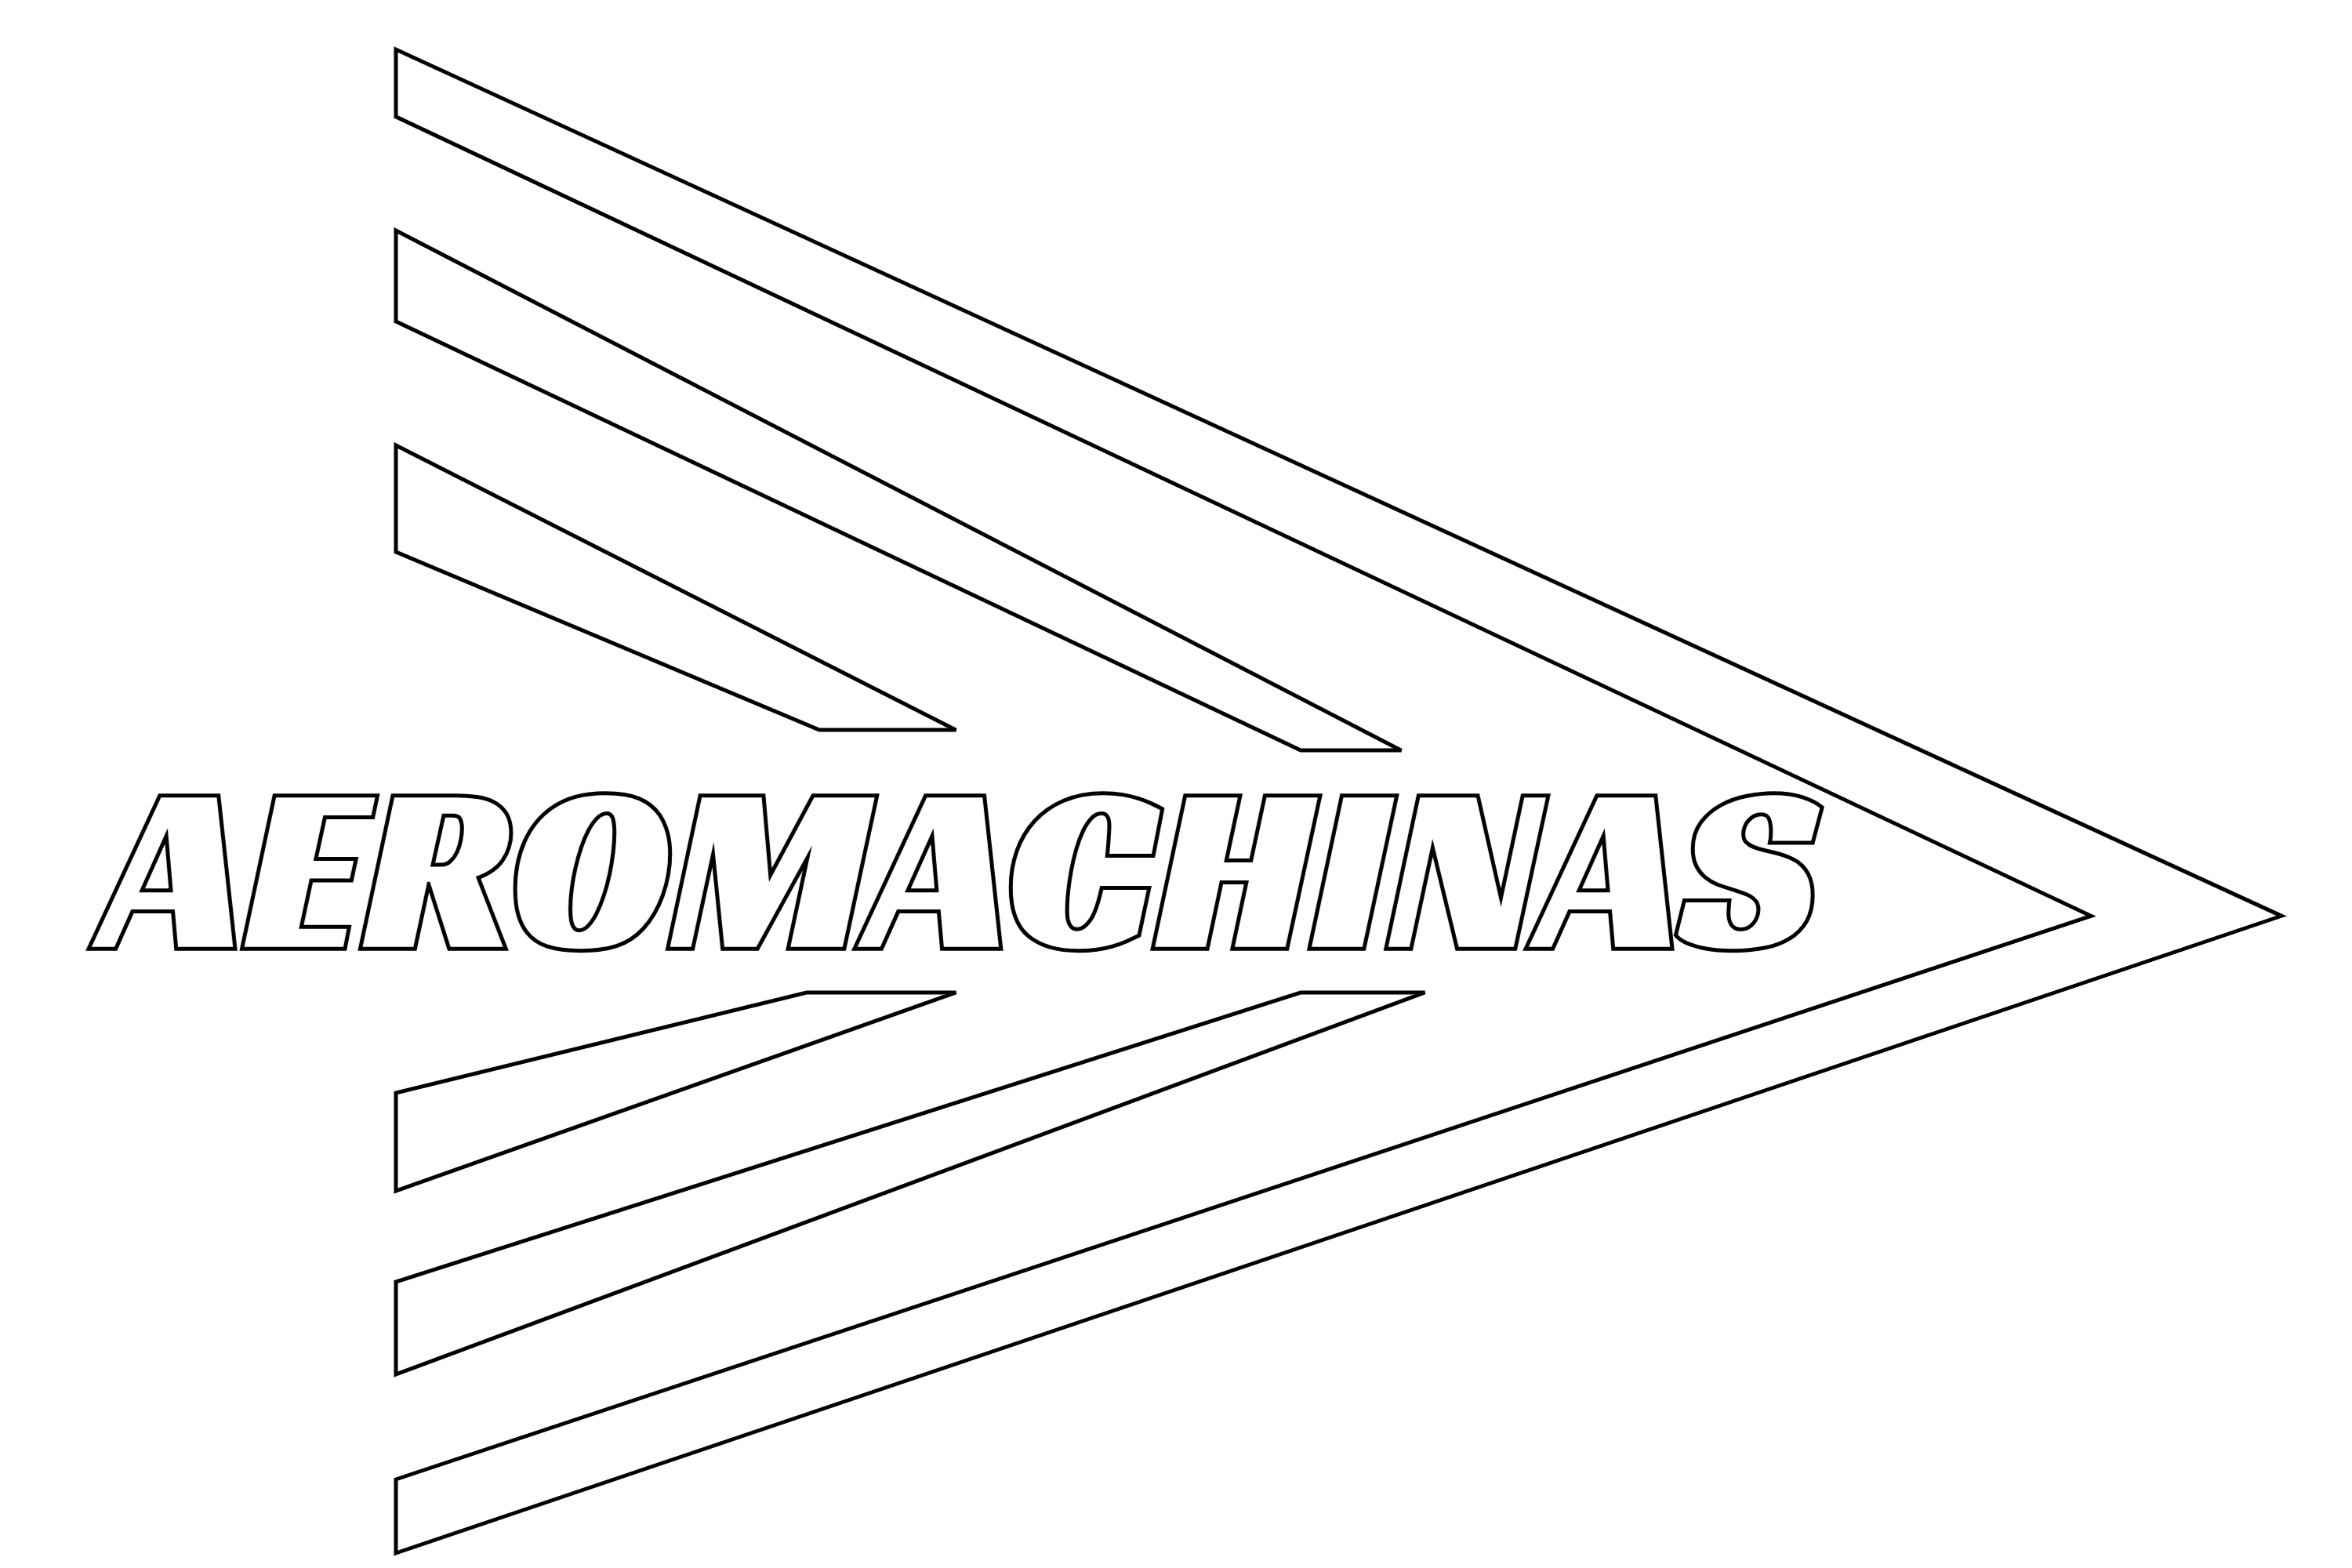 Aeromachinas